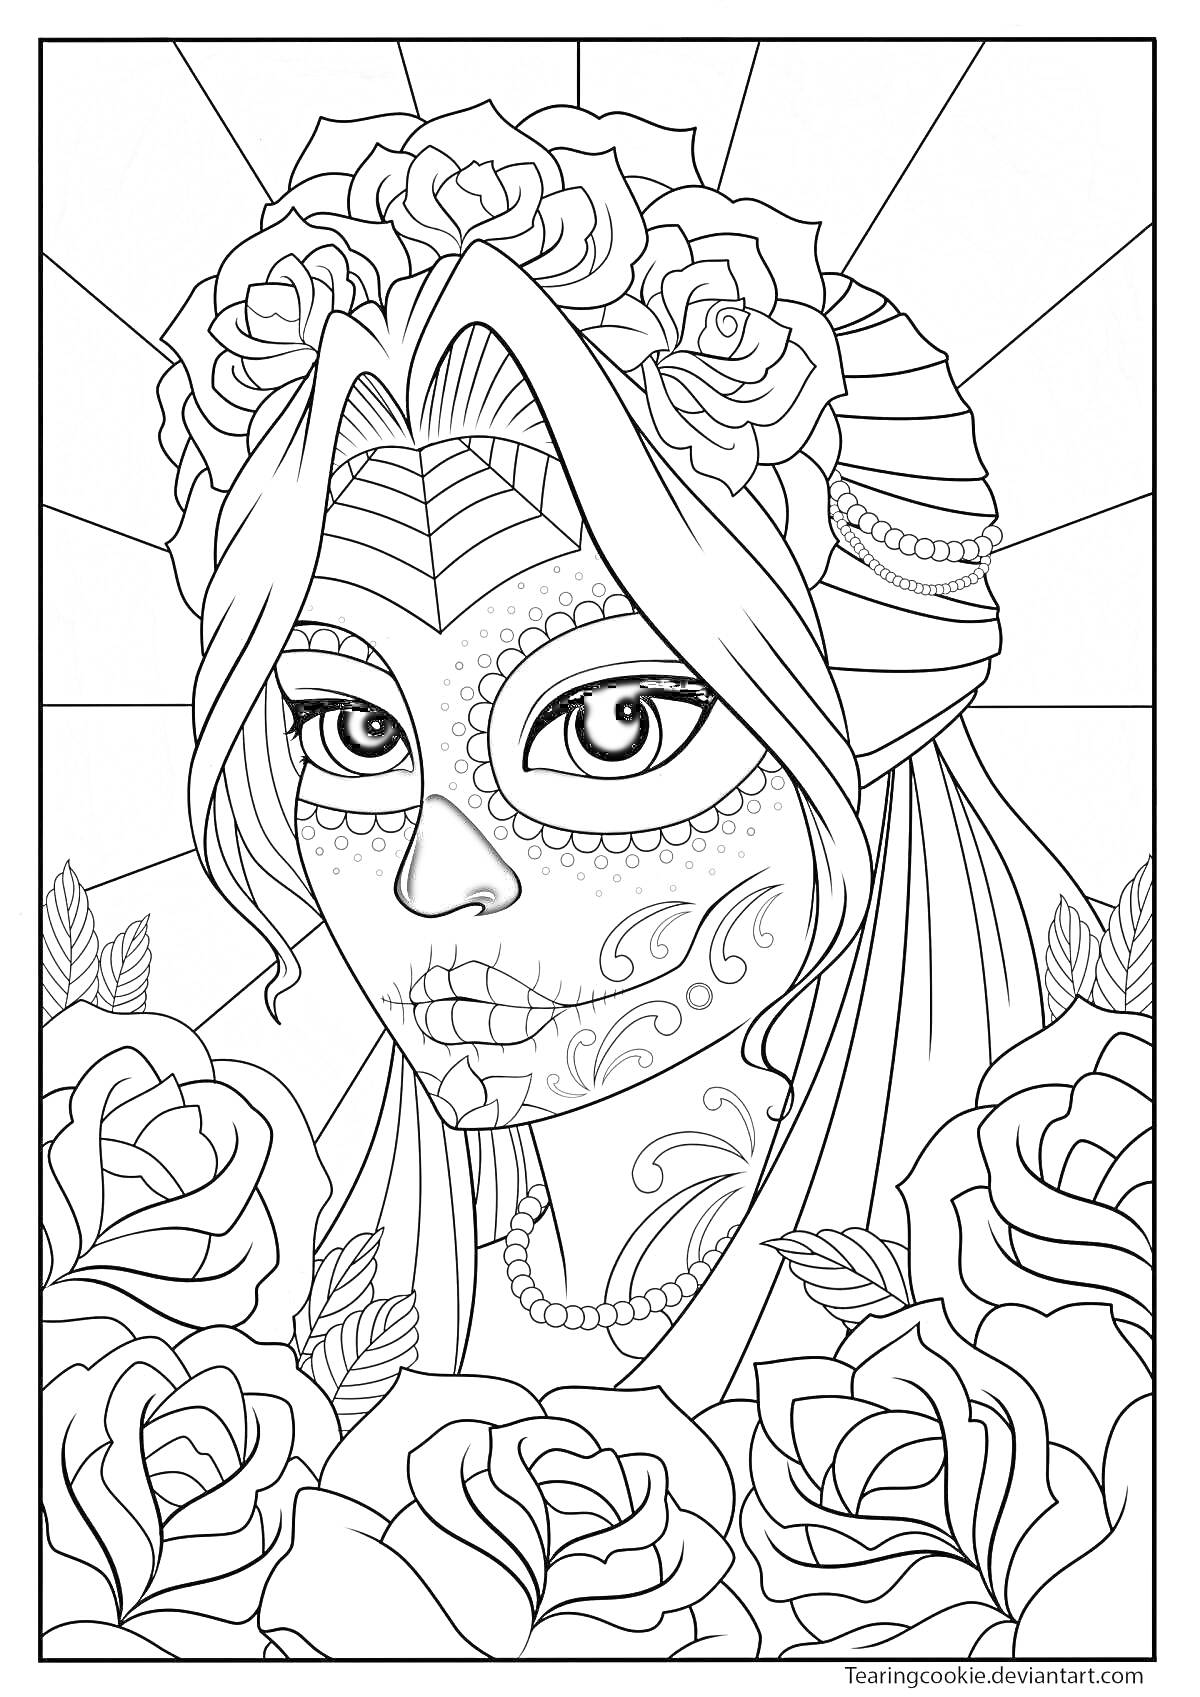 Раскраска Женщина с гримом сахарного черепа, розы в волосах, цветы вокруг лица